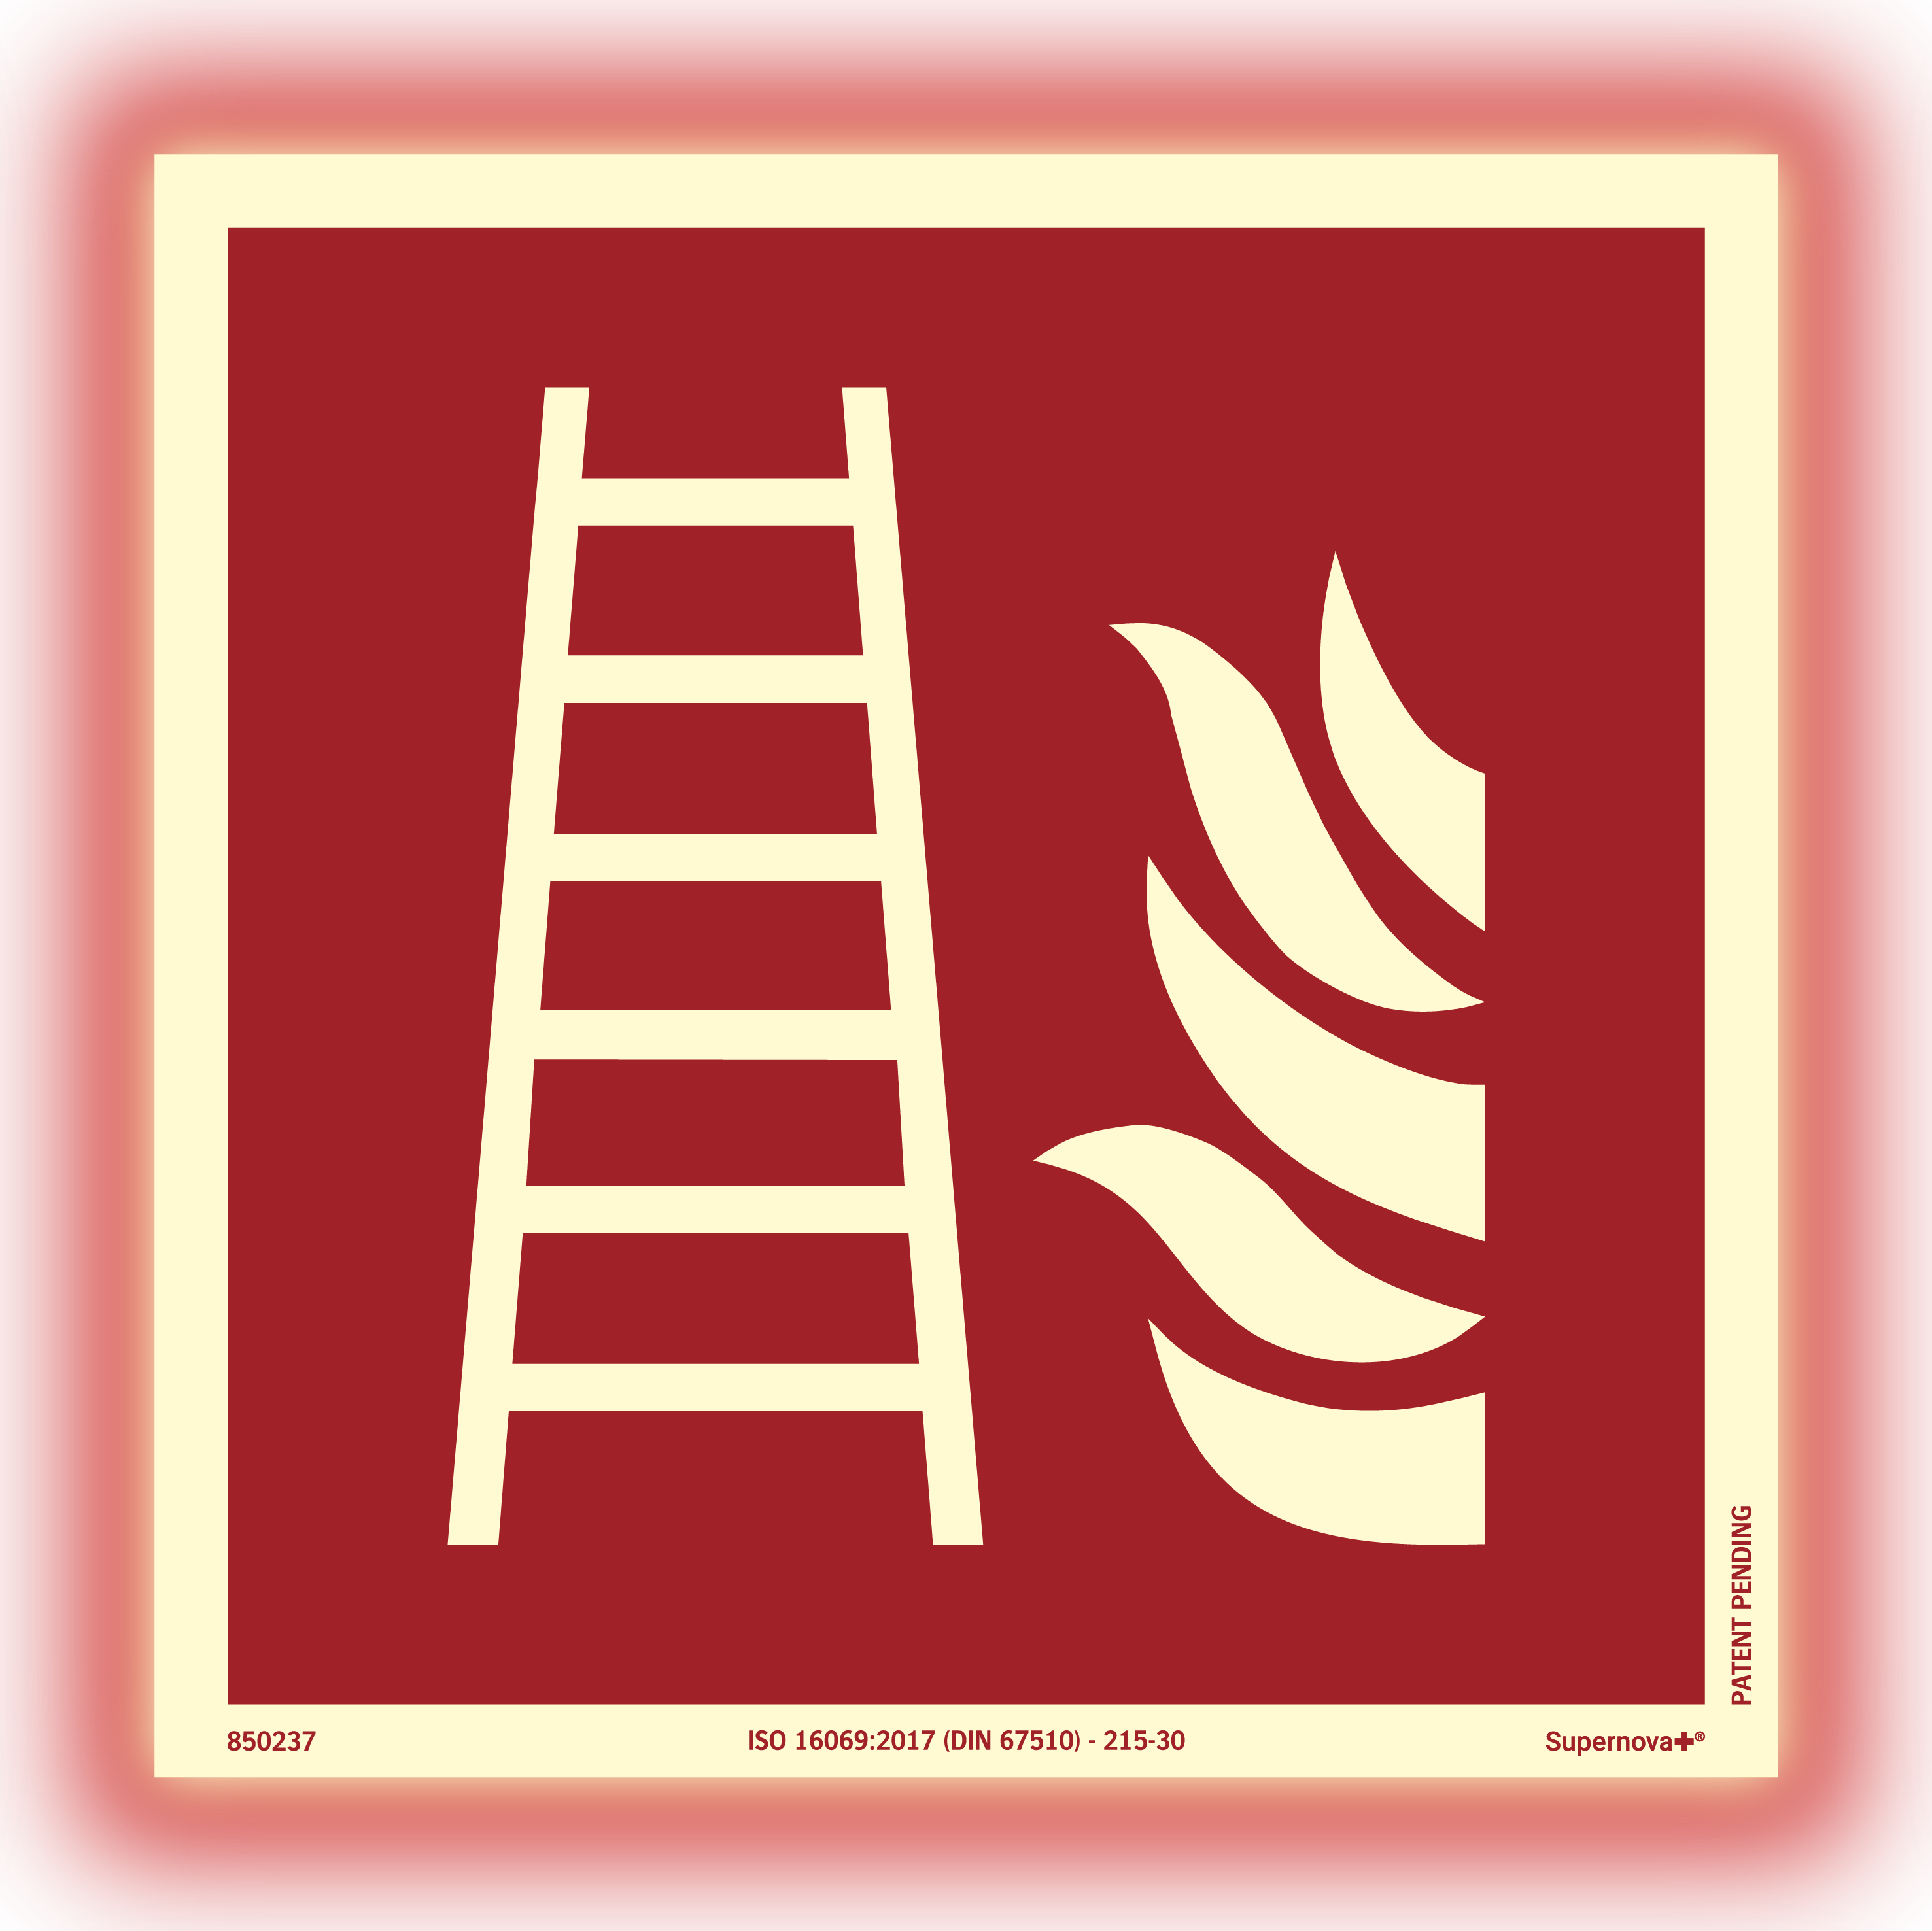 Supernova+® Fire ladder